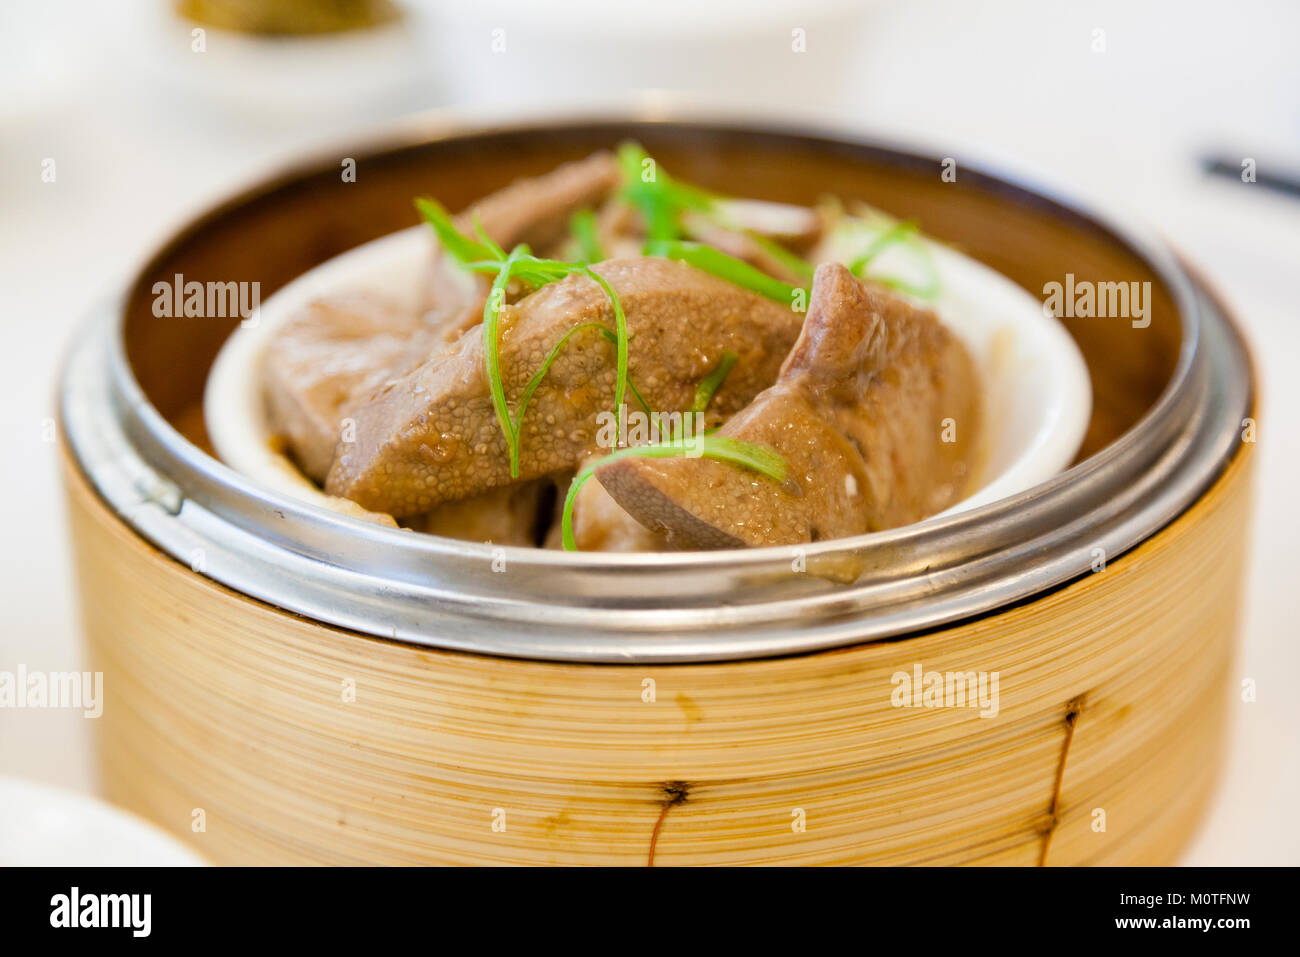 Le foie de porc braisé en dim sum vapeur en bambou est un plat populaire dans les restaurants cantonais de Hong Kong. Banque D'Images